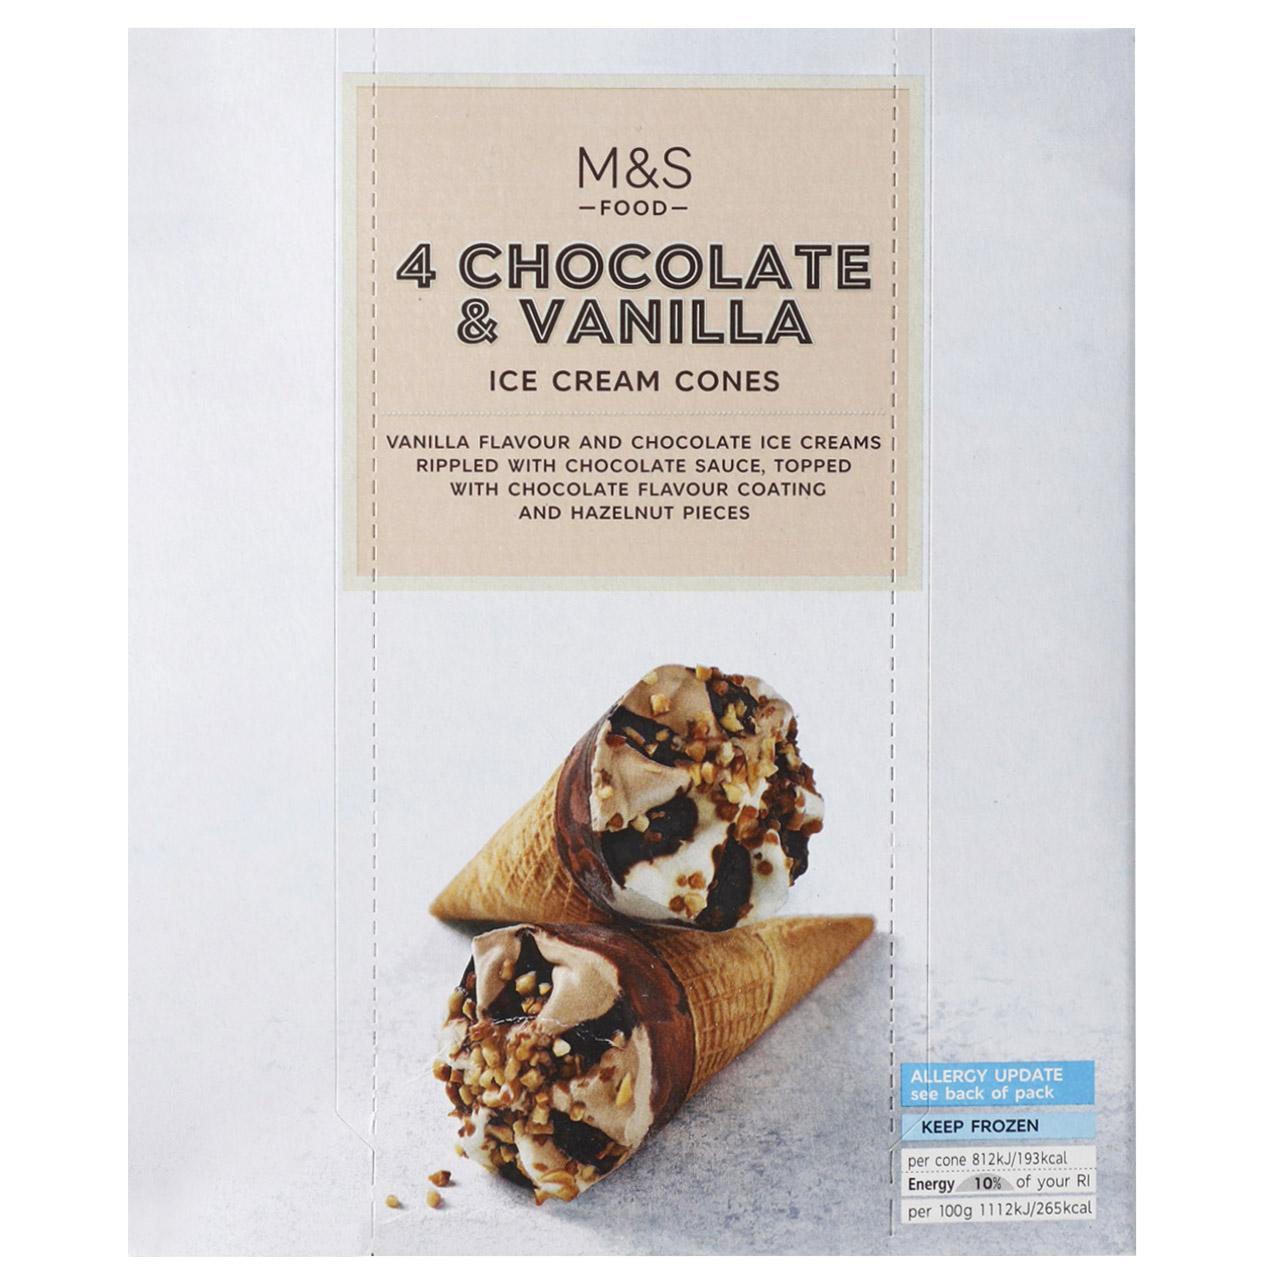 M&S 4 Chocolate & Vanilla Ice Cream Cones